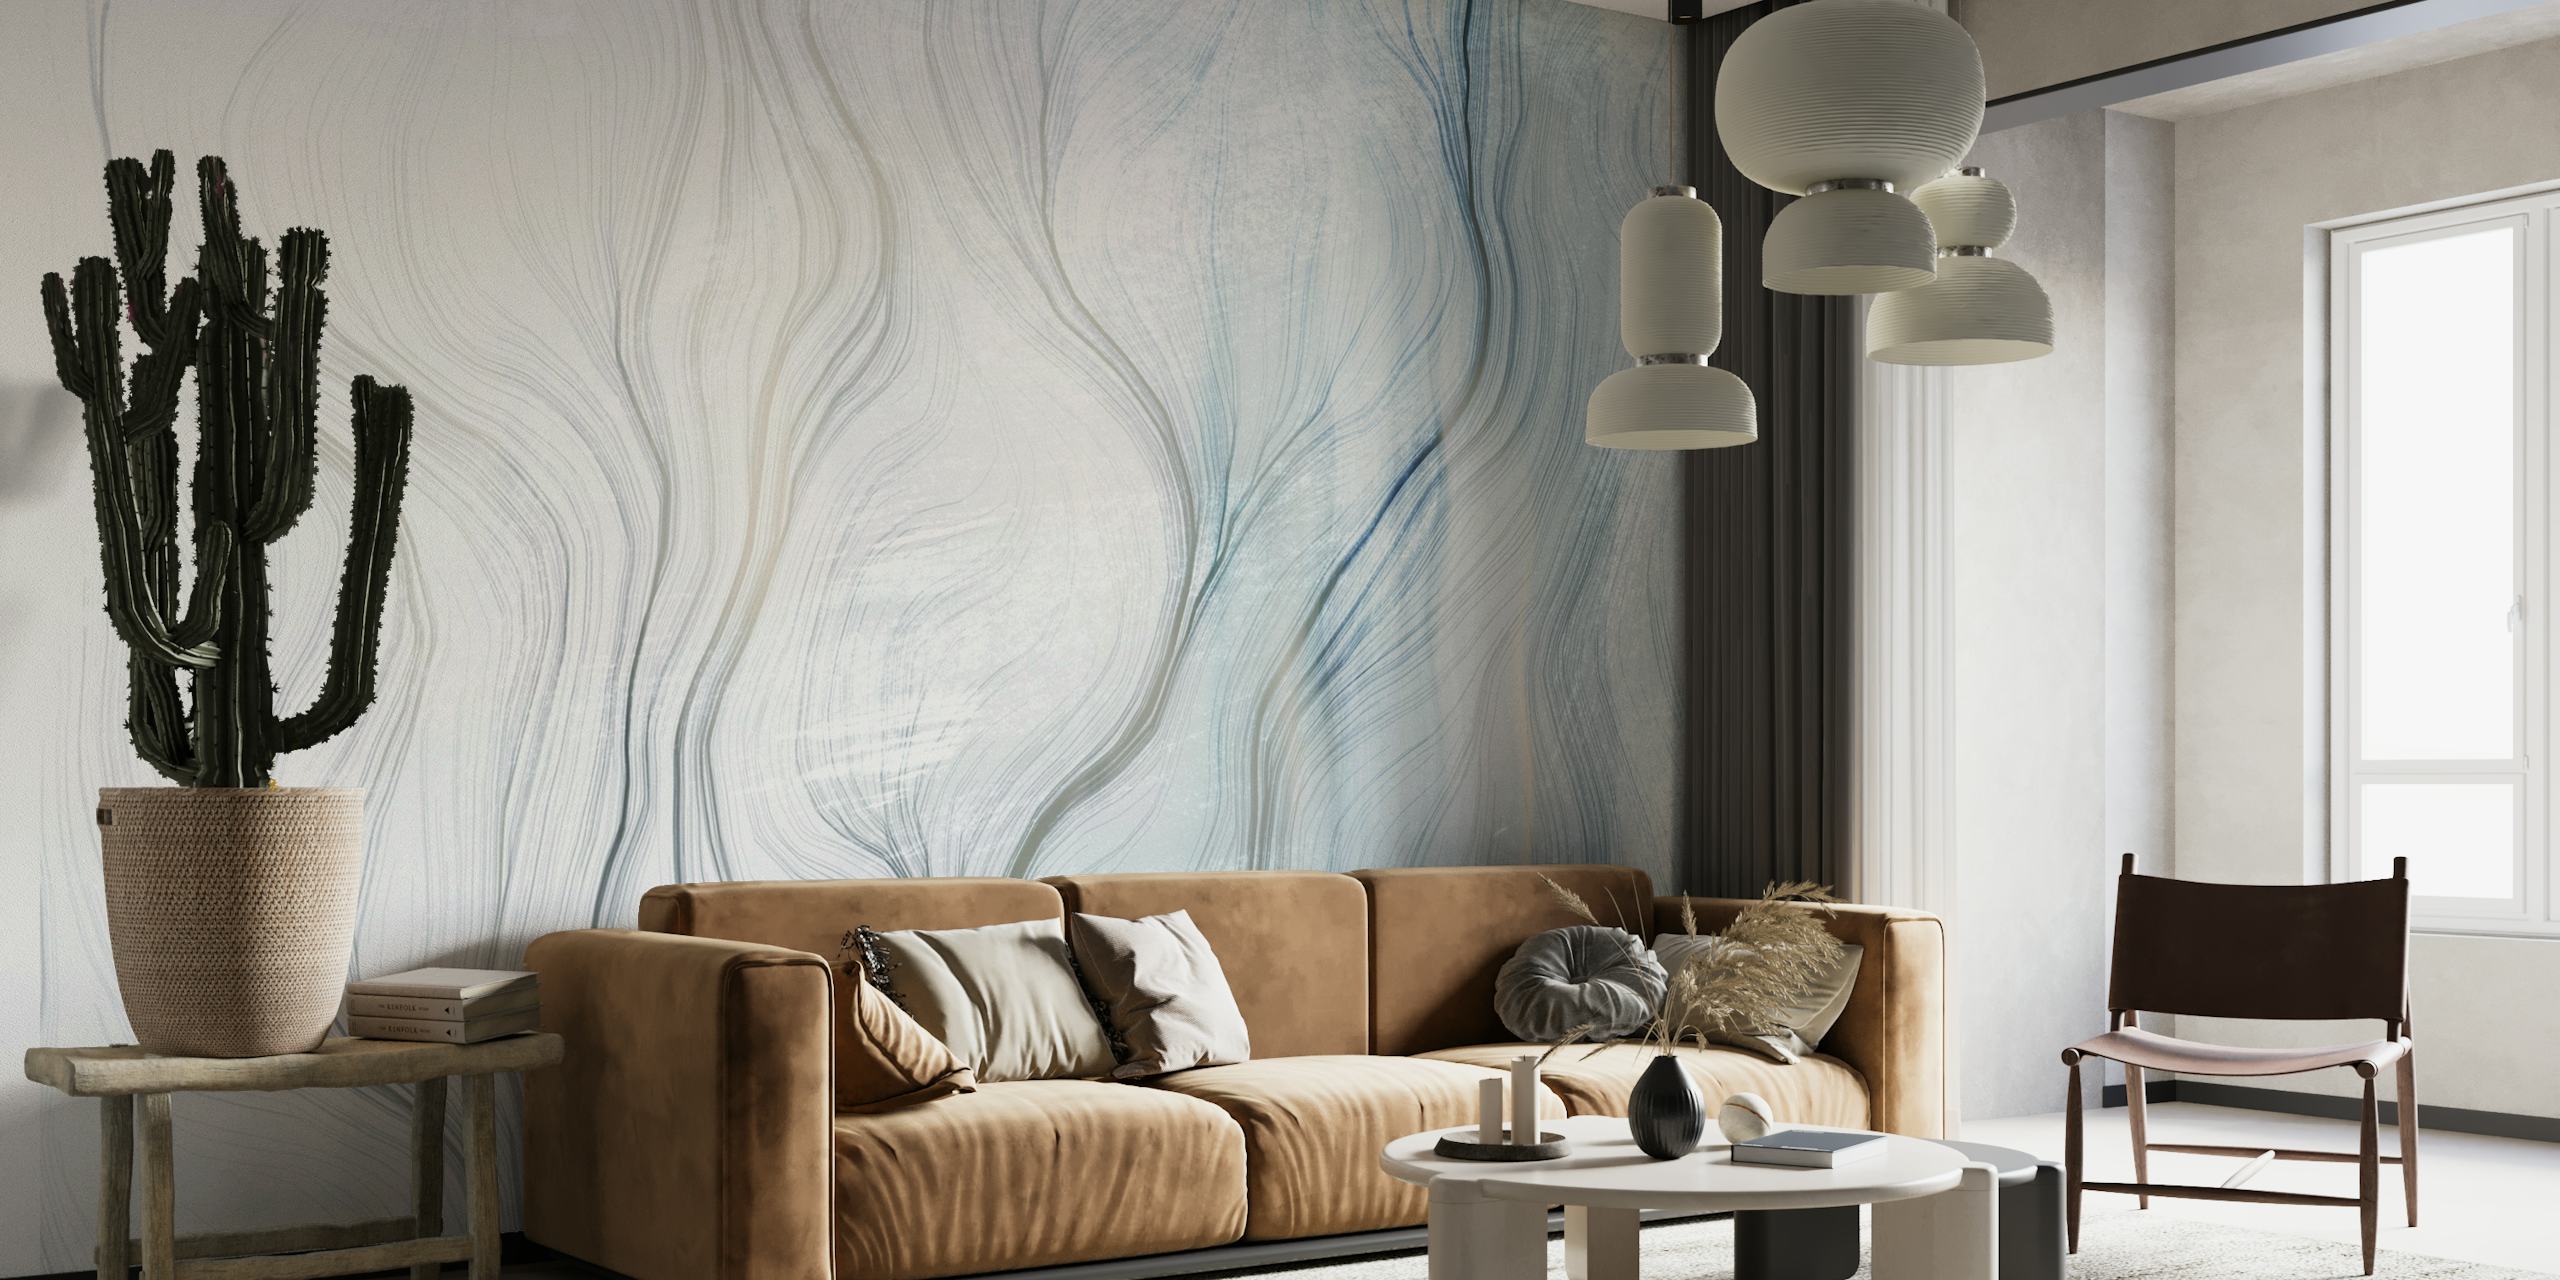 Abstraktes Wandbild mit weichen Kurven und Farbverläufen in Blau und Grau, das eine ruhige Atmosphäre schafft